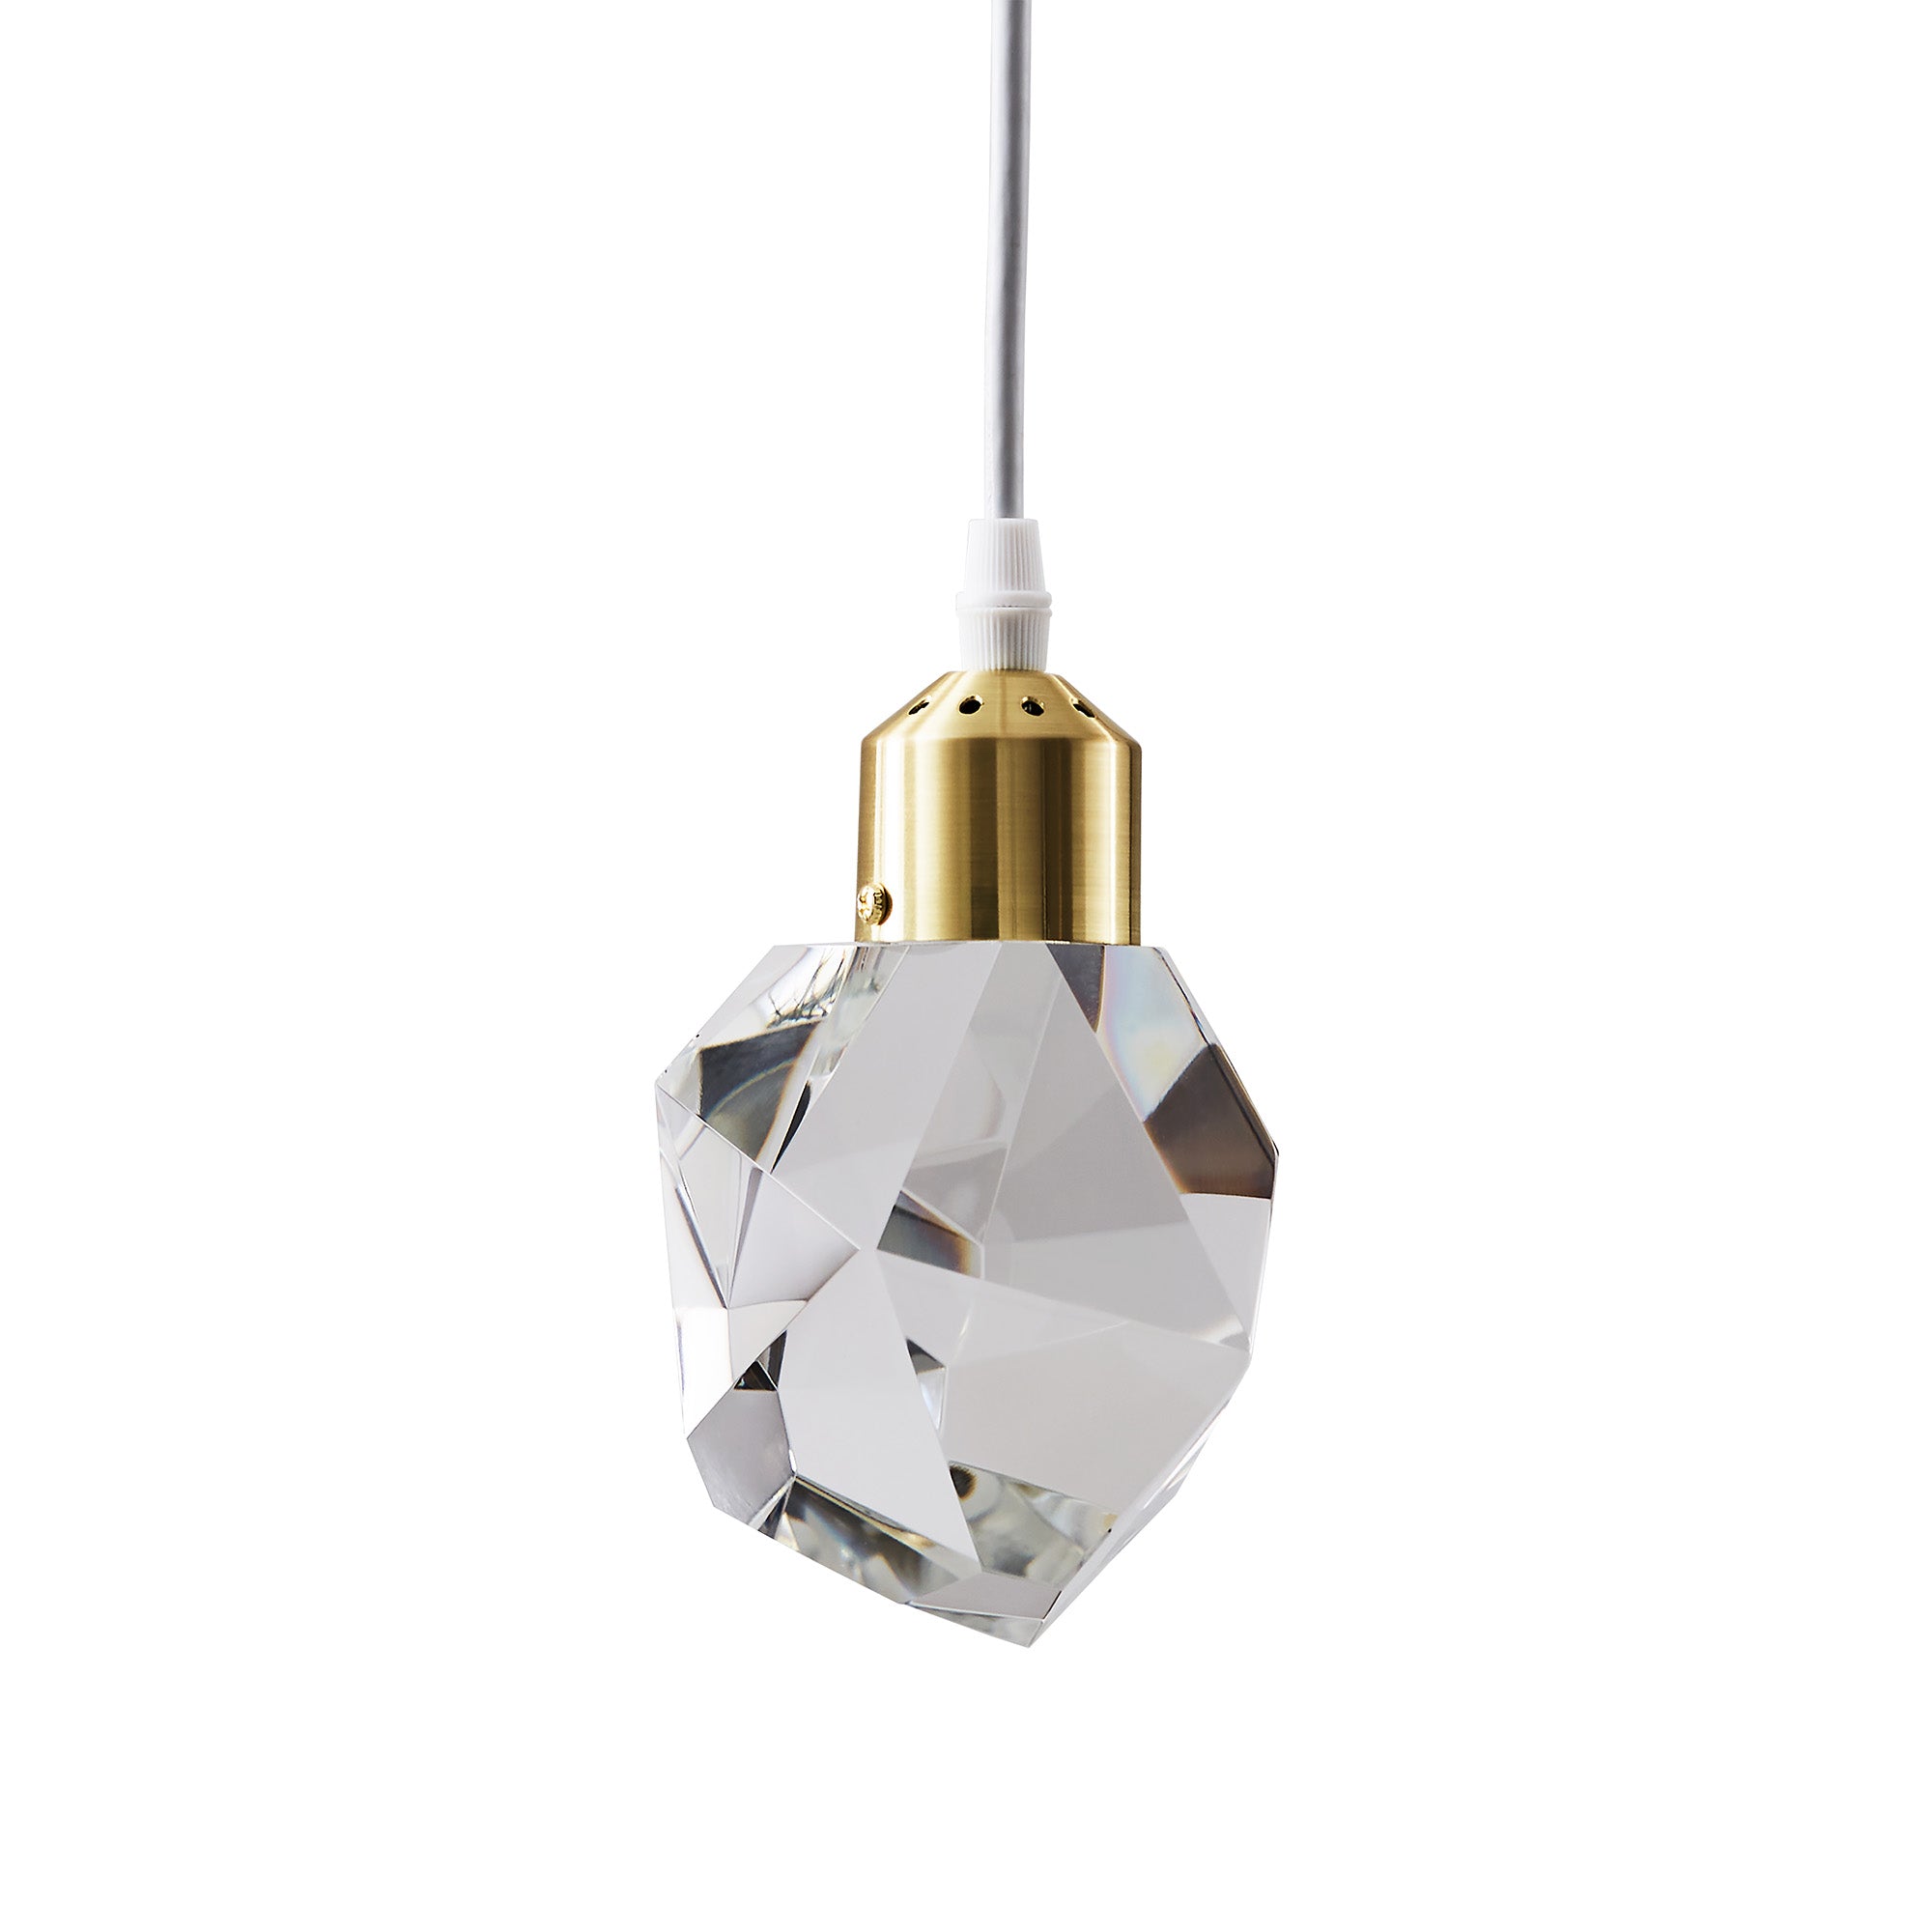 Crystal Rock LED Pendant / Chandelier - 1 - Light